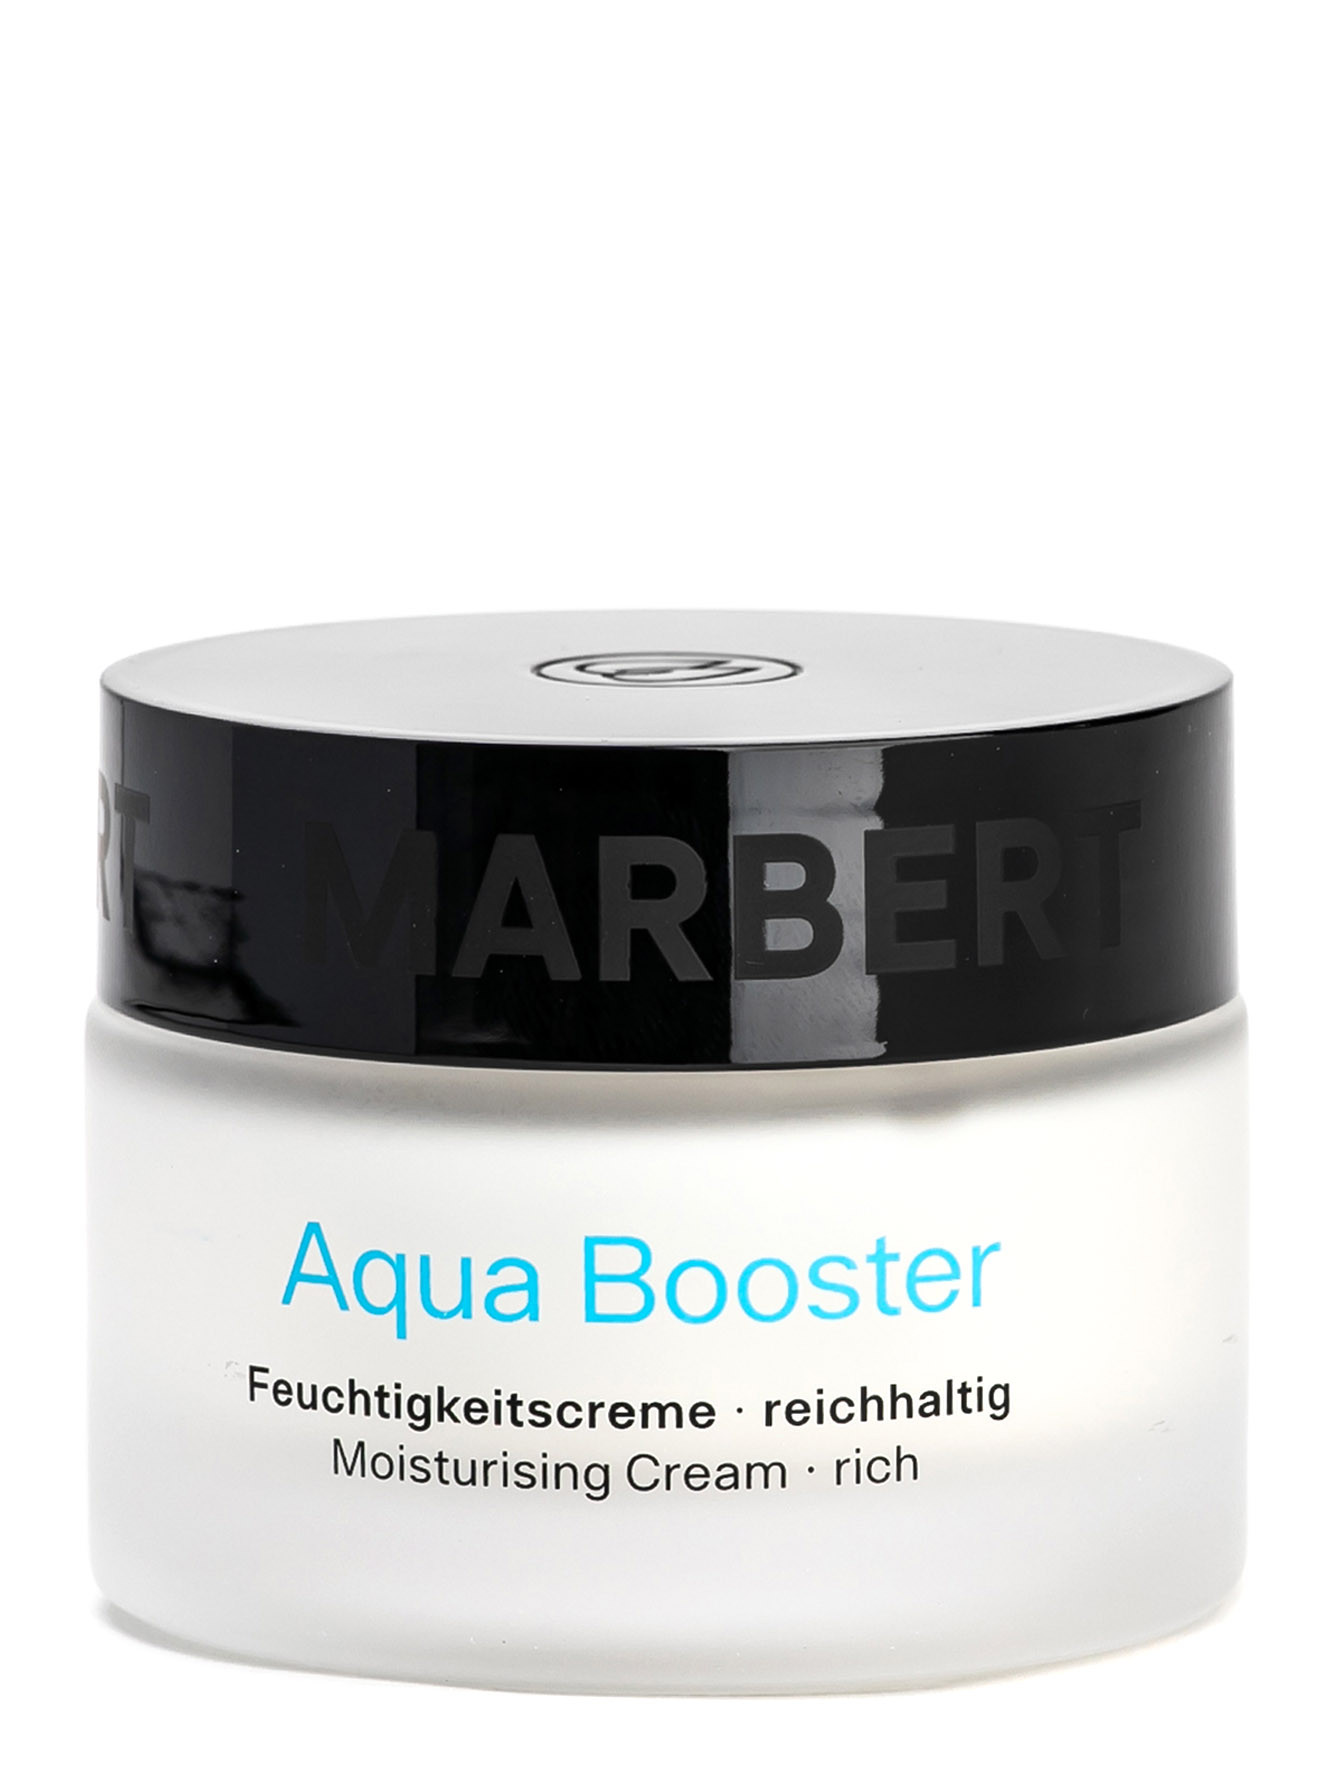 Интенсивный увлажняющий крем для сухой кожи Aqua Booster Moisturising Creame, 50 мл - Общий вид